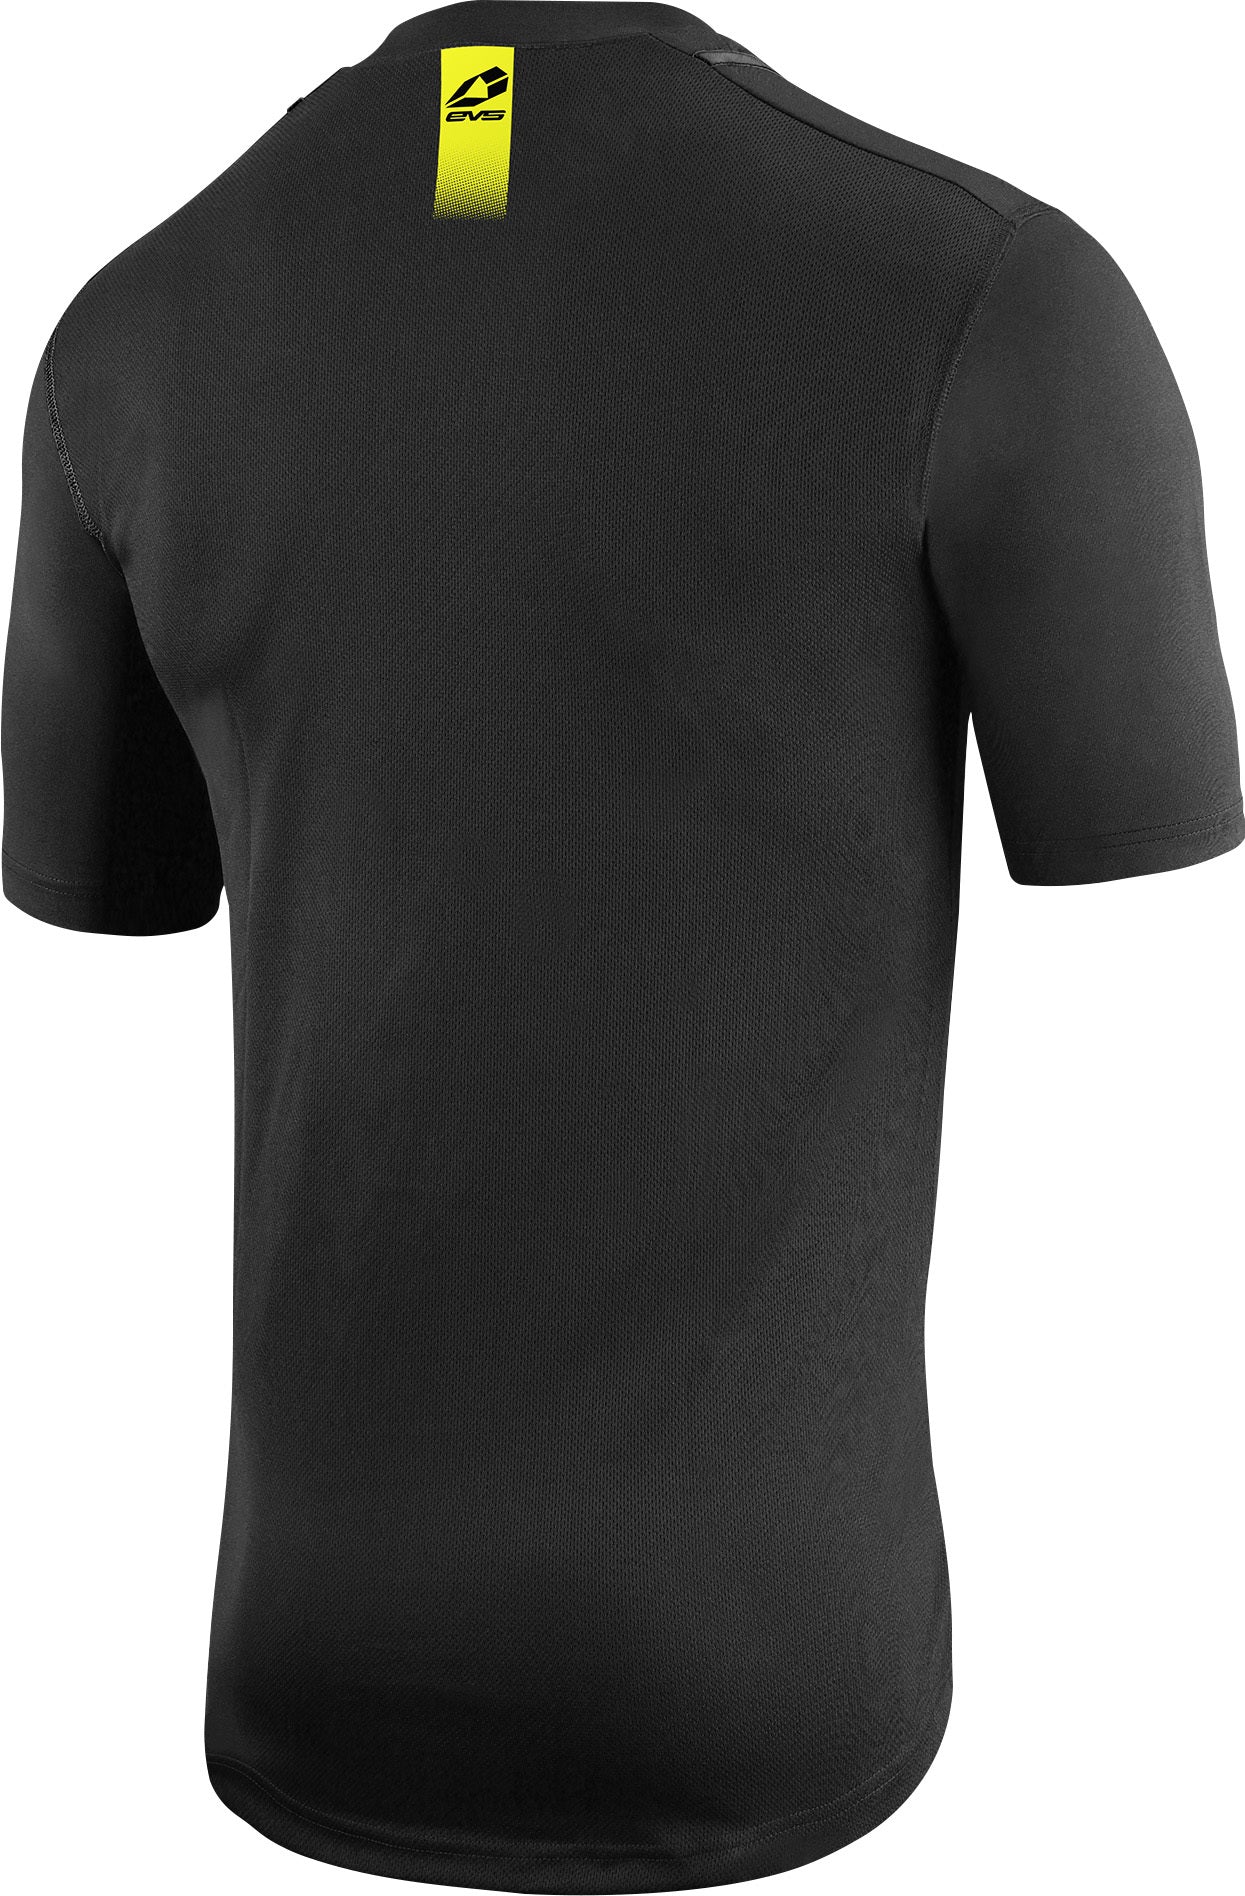 Short Sleeve Tug Shirt Black 2x